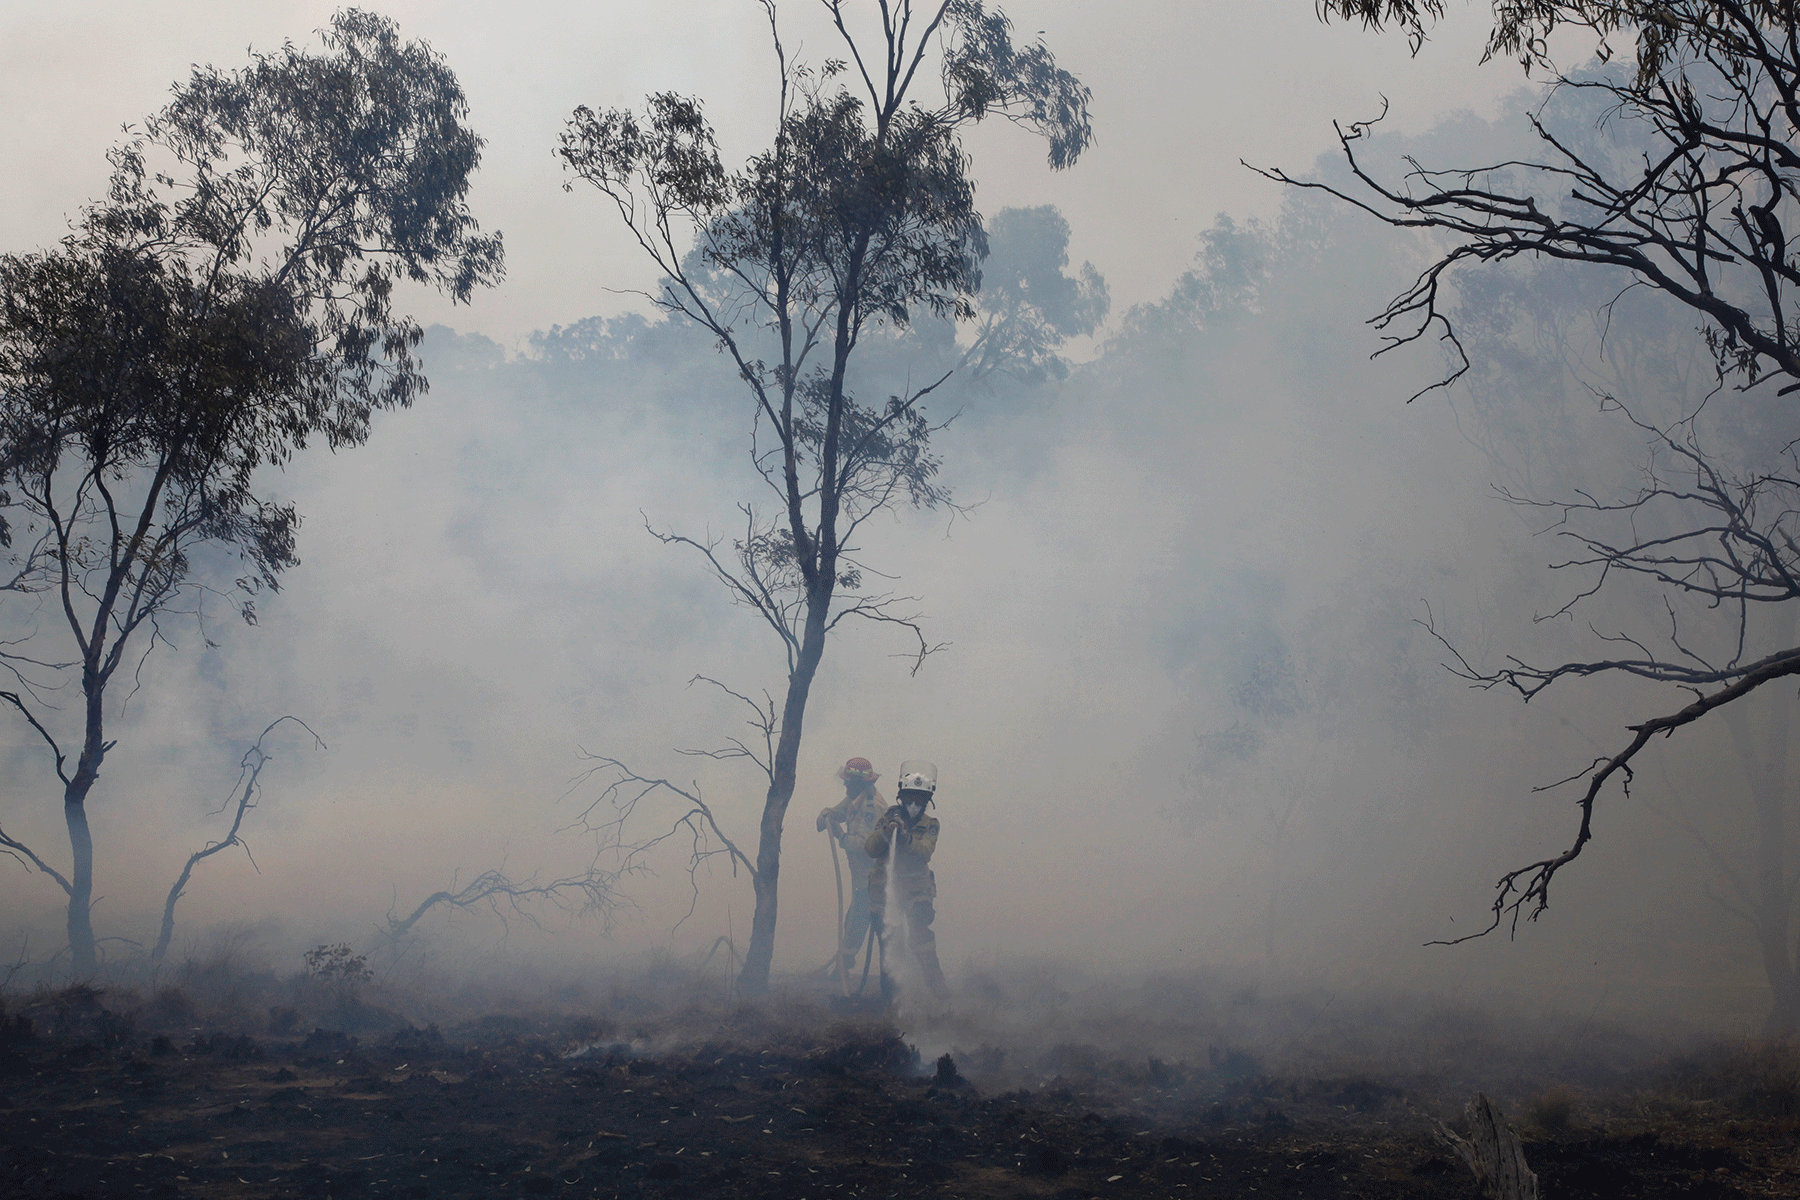 Firefighters battle a bushfire in Bumbalong, New South Wales, Australia, in February 2020 Photo Credit: Jen Osborne